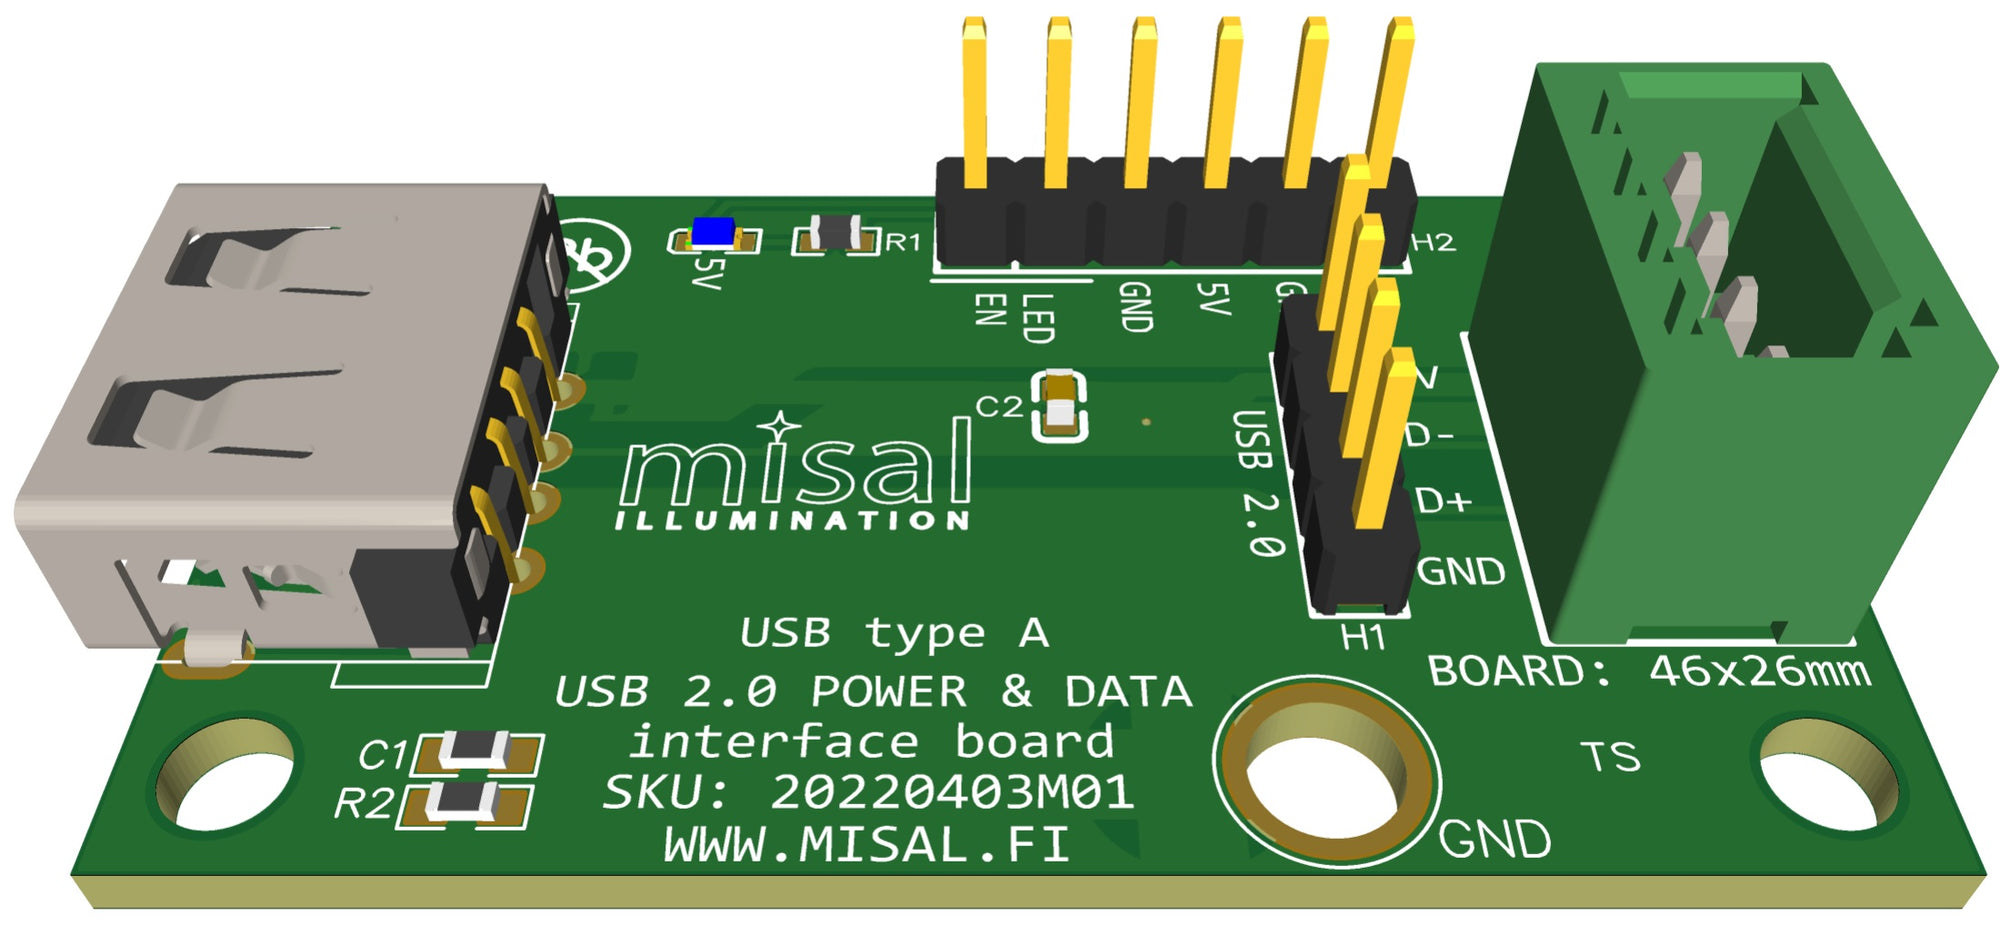 USB-A, USB 2.0 interface board